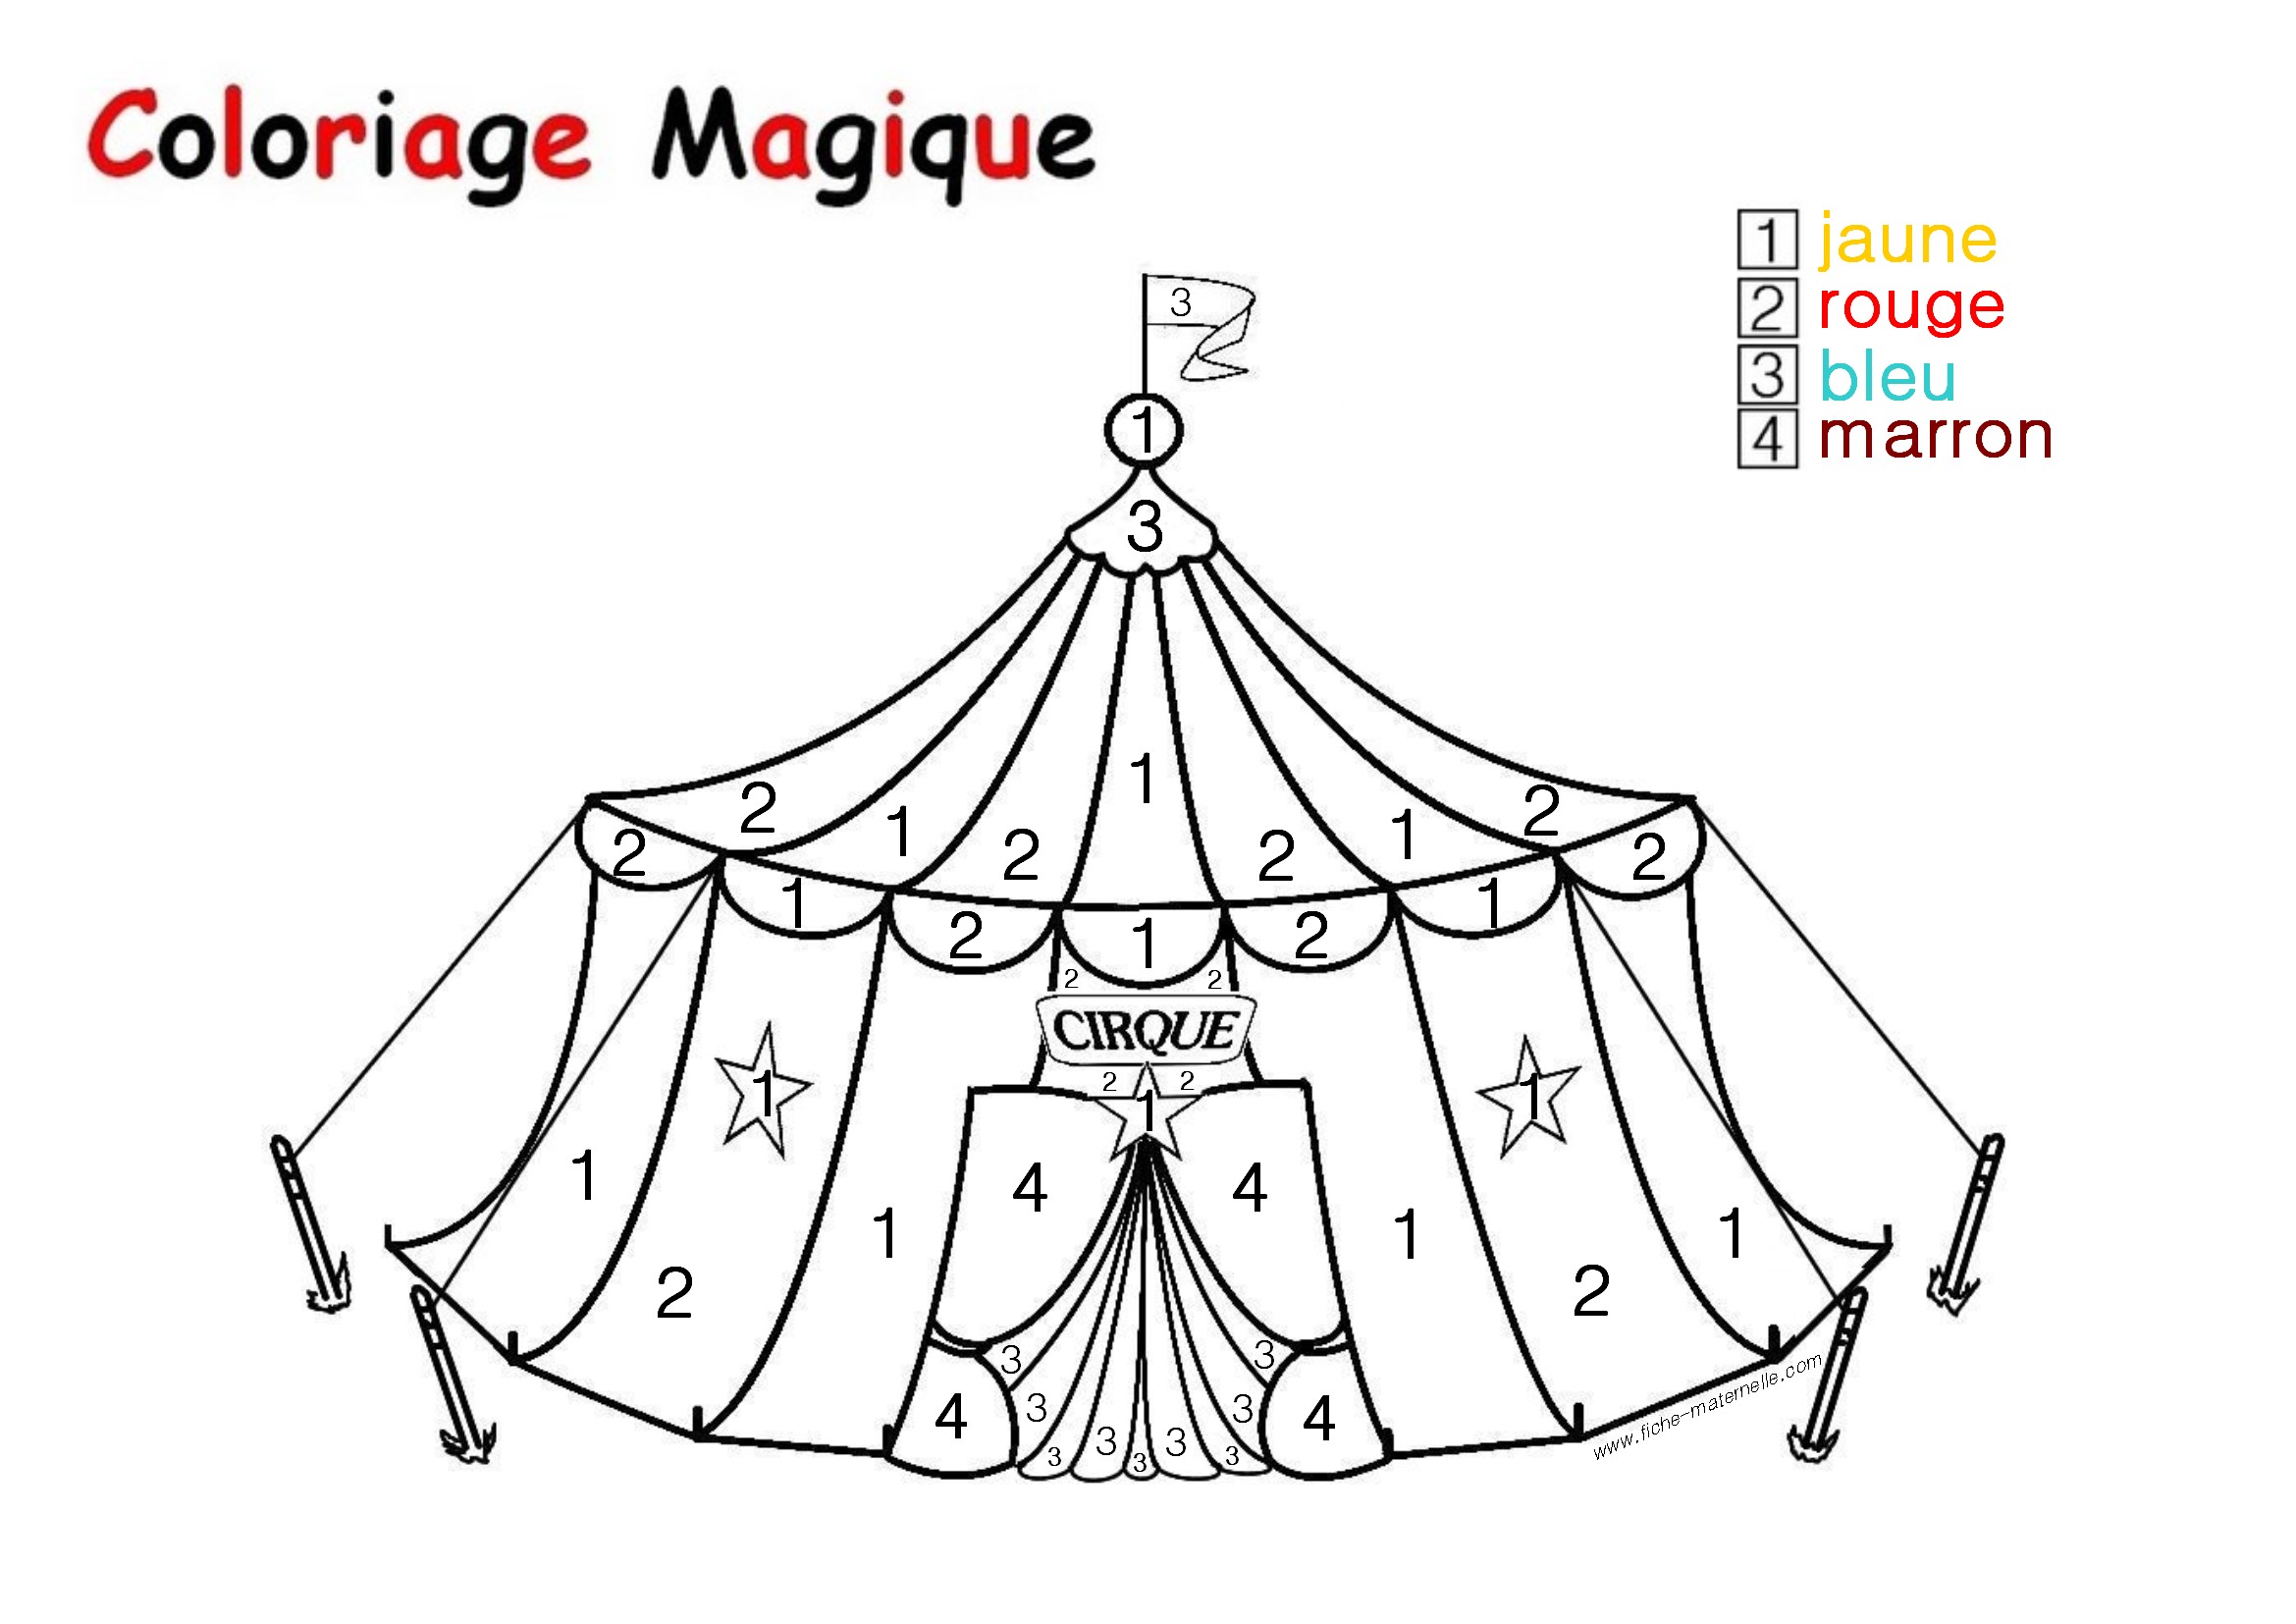 Coloriage magique Le Chapiteau d un cirque